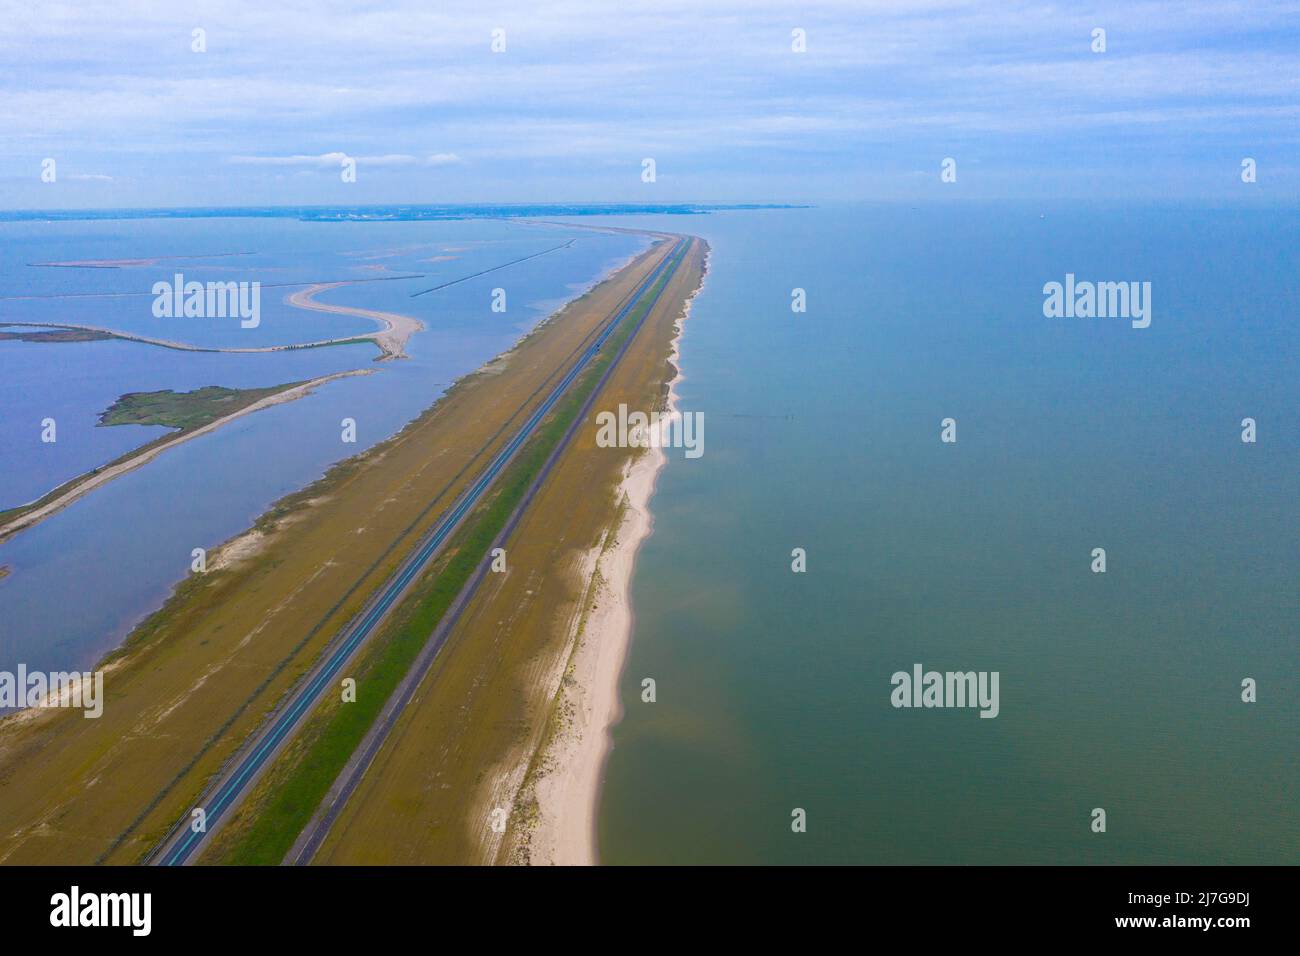 Vue aérienne d'une île artificielle appelée Houtribdijk dans le lac Markermeer. La digue N302 de Lelystad à Enkhuizen. Flevoland, pays-Bas. Banque D'Images